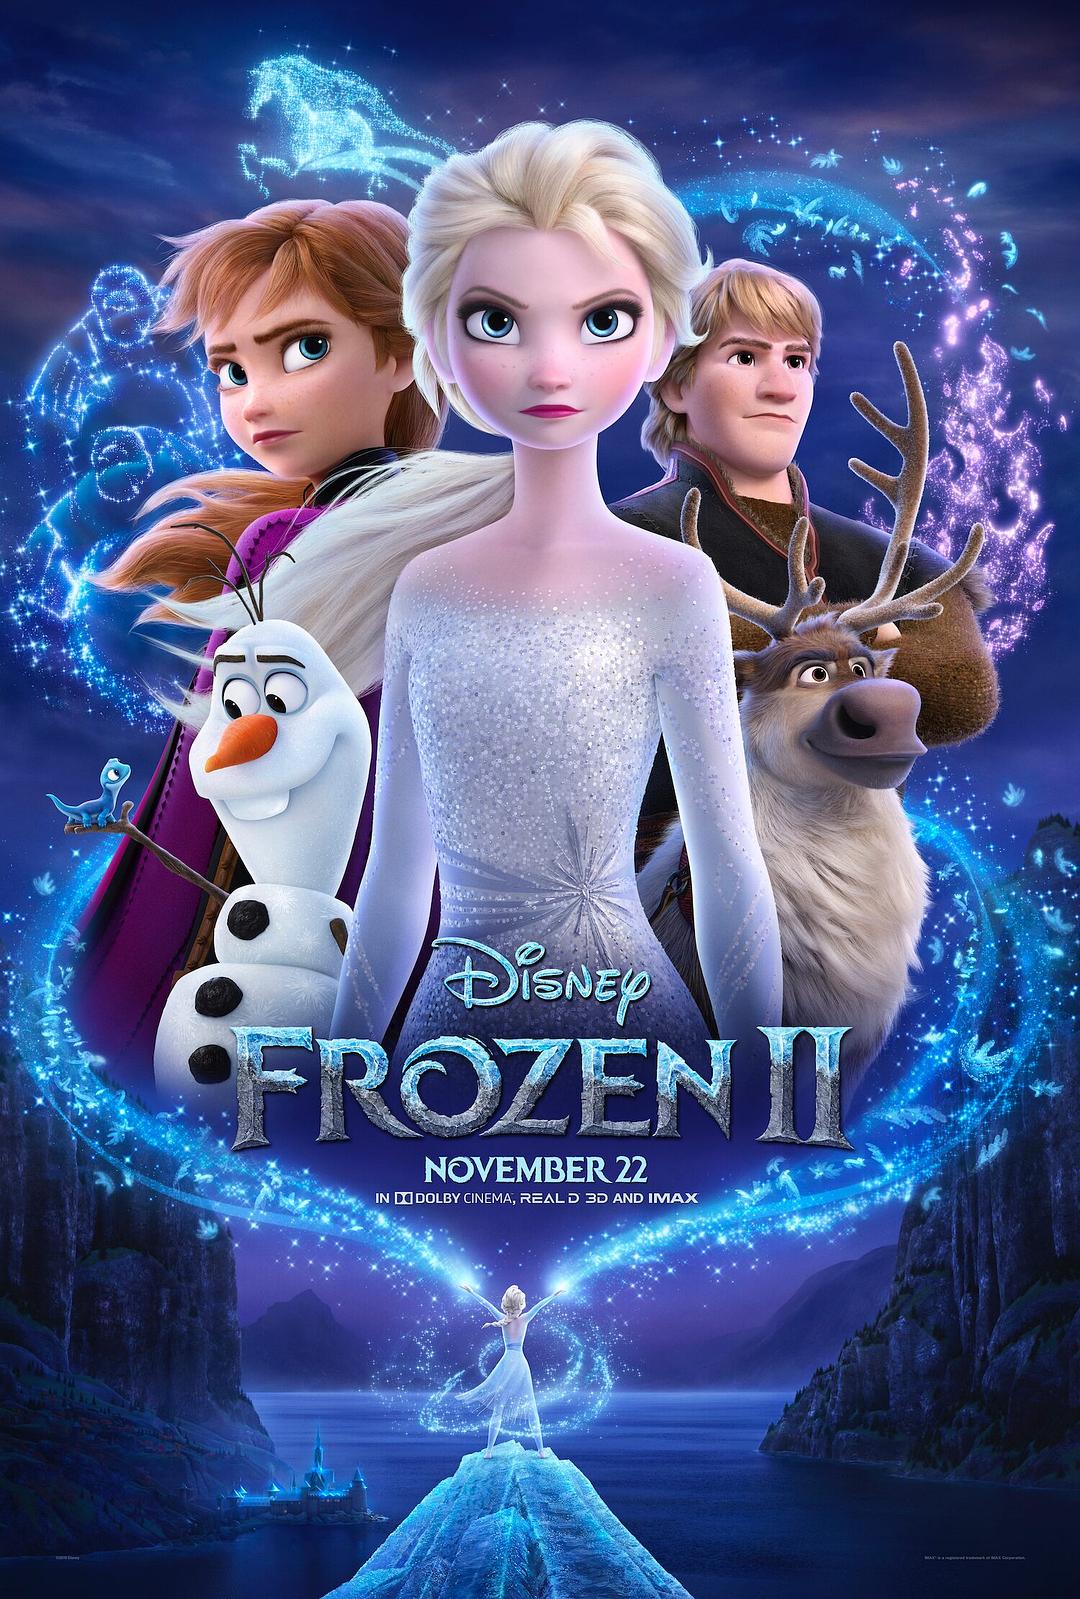 冰雪奇缘2 4K蓝光原盘下载+高清MKV版/魔雪奇缘2(港) 2019 Frozen II 57.0G插图-小白游戏网